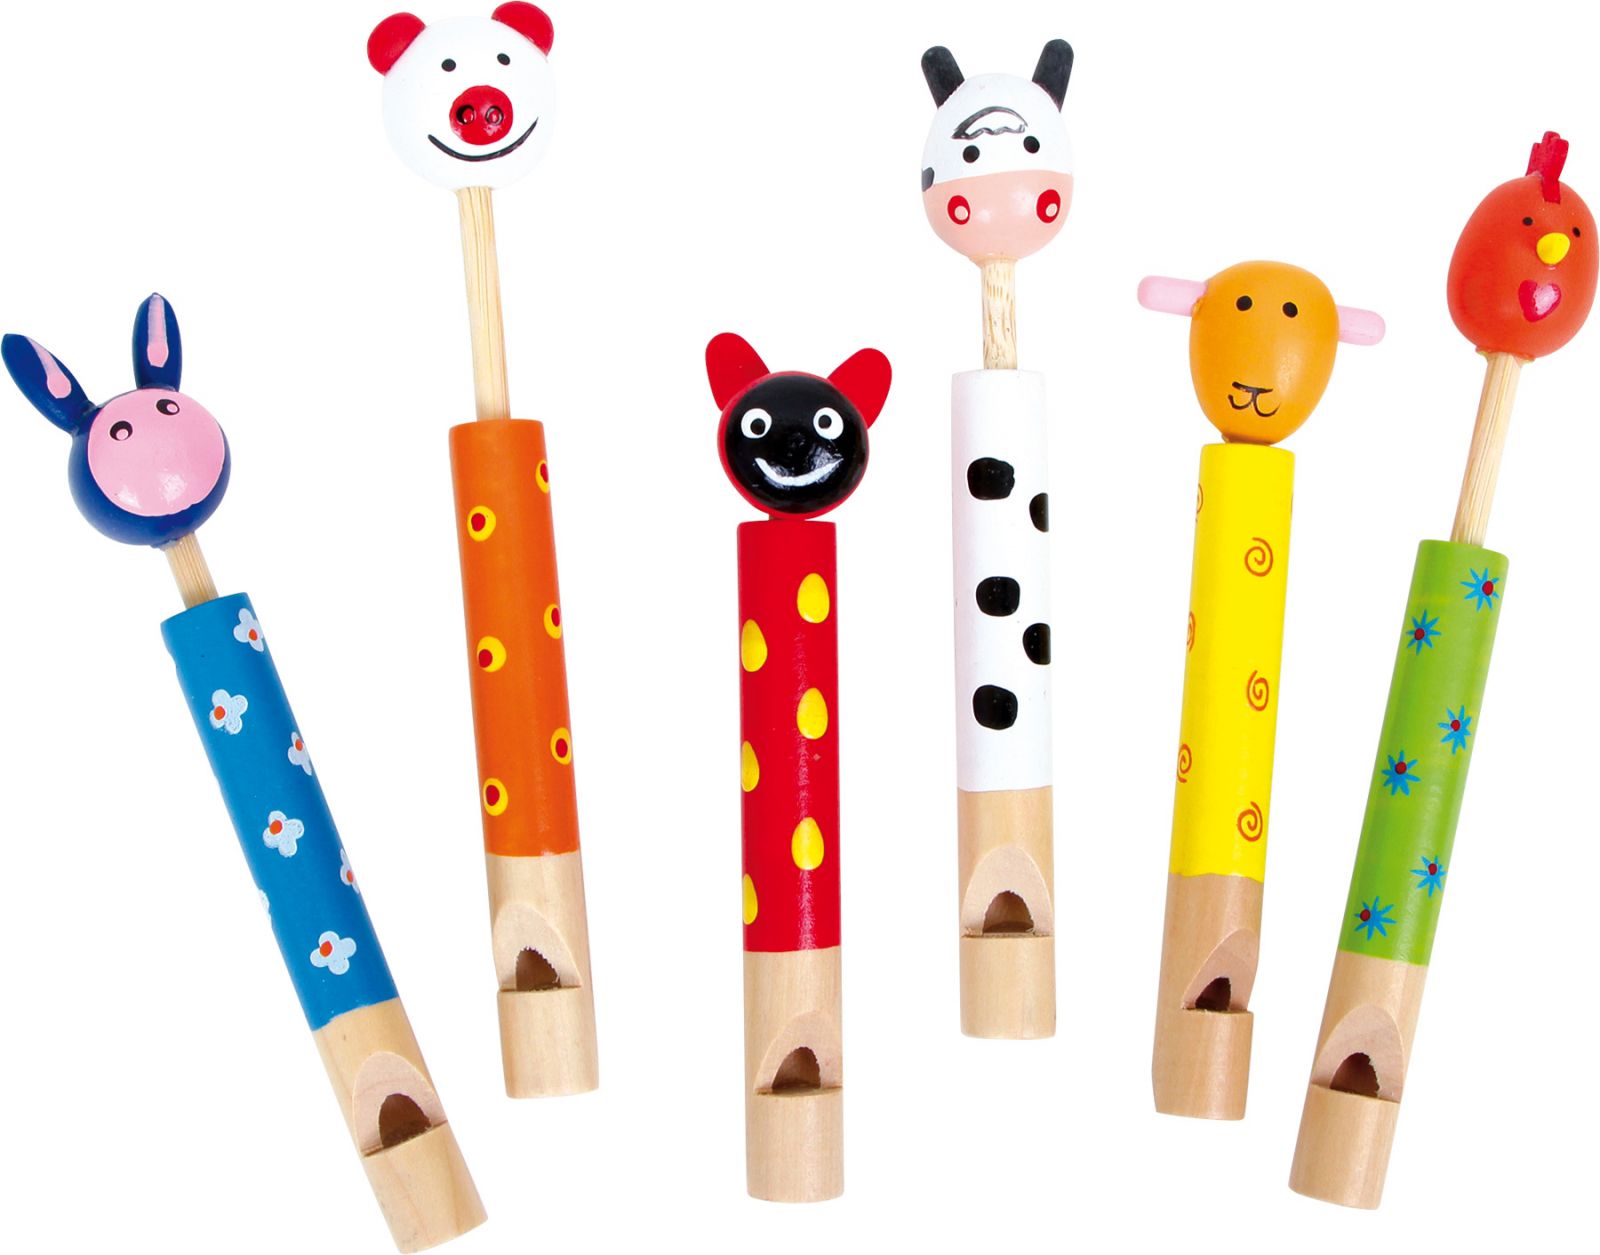 Dřevěné hračky Dětská dřevěná píšťalka zvířátka 1ks modrá Dětská dřevěná píšťalka zvířátka 1ks modrá Small foot by Legler